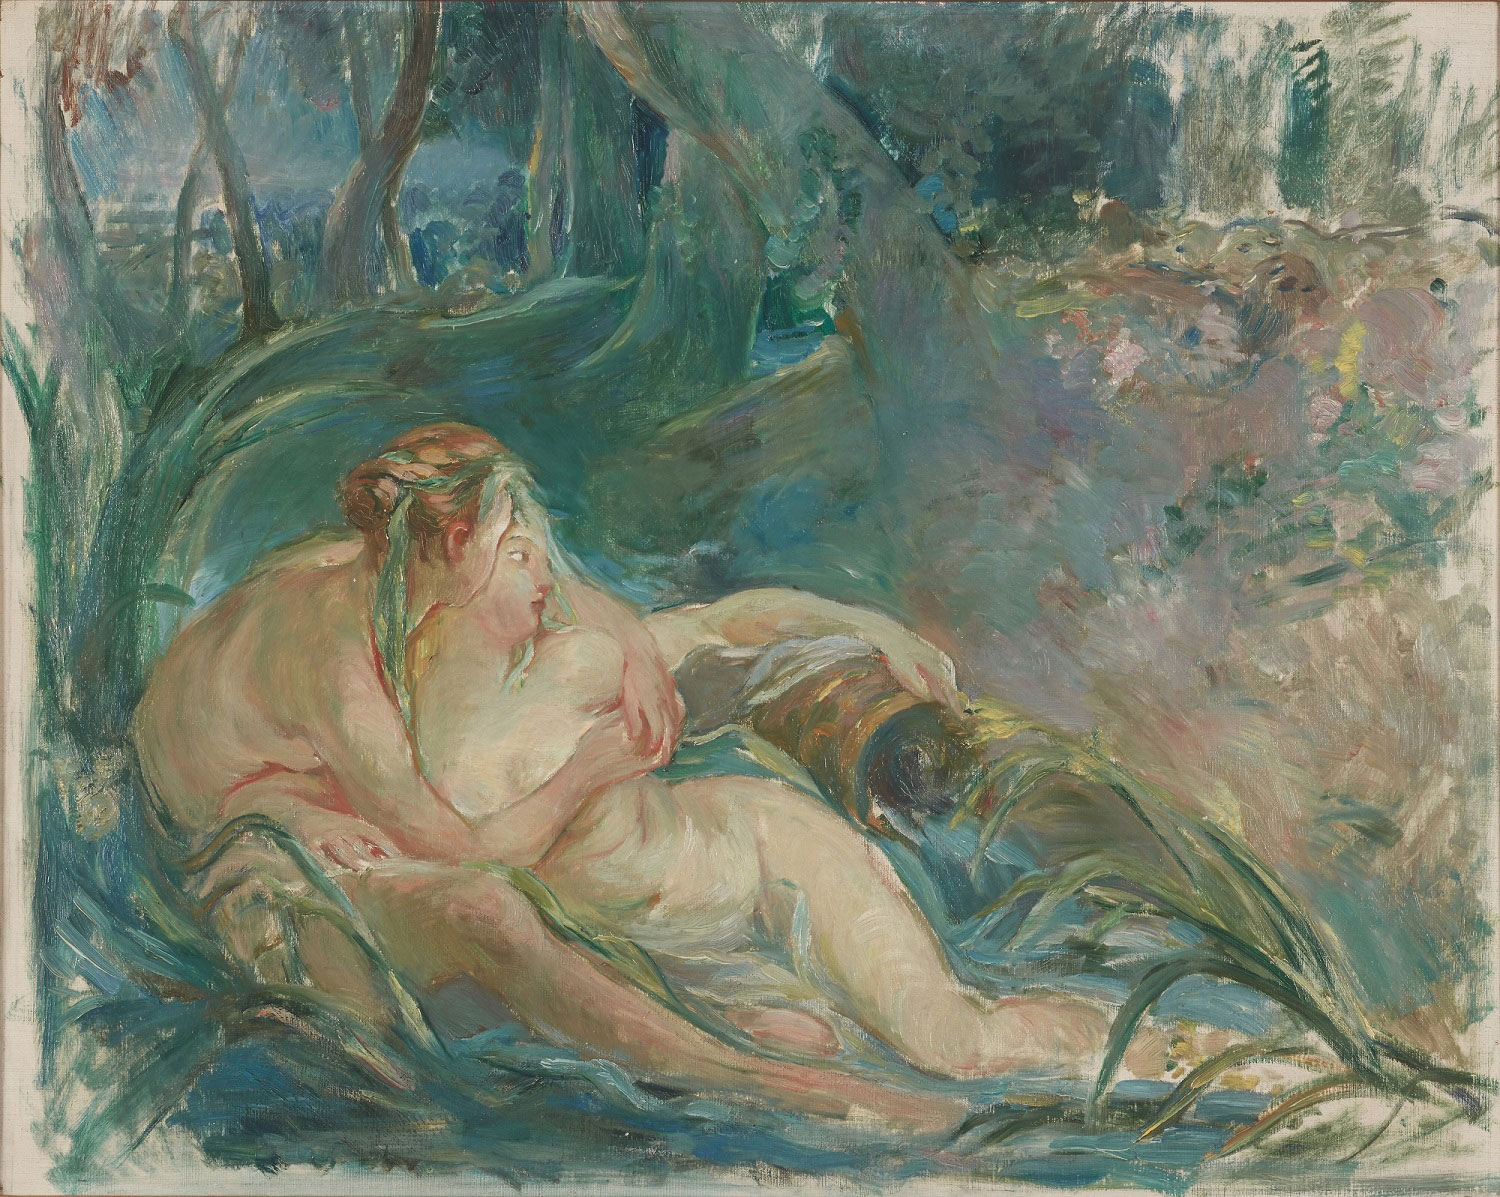 Il Musée Marmottan di Parigi acquista un raro dipinto di Berthe Morisot a soggetto mitologico